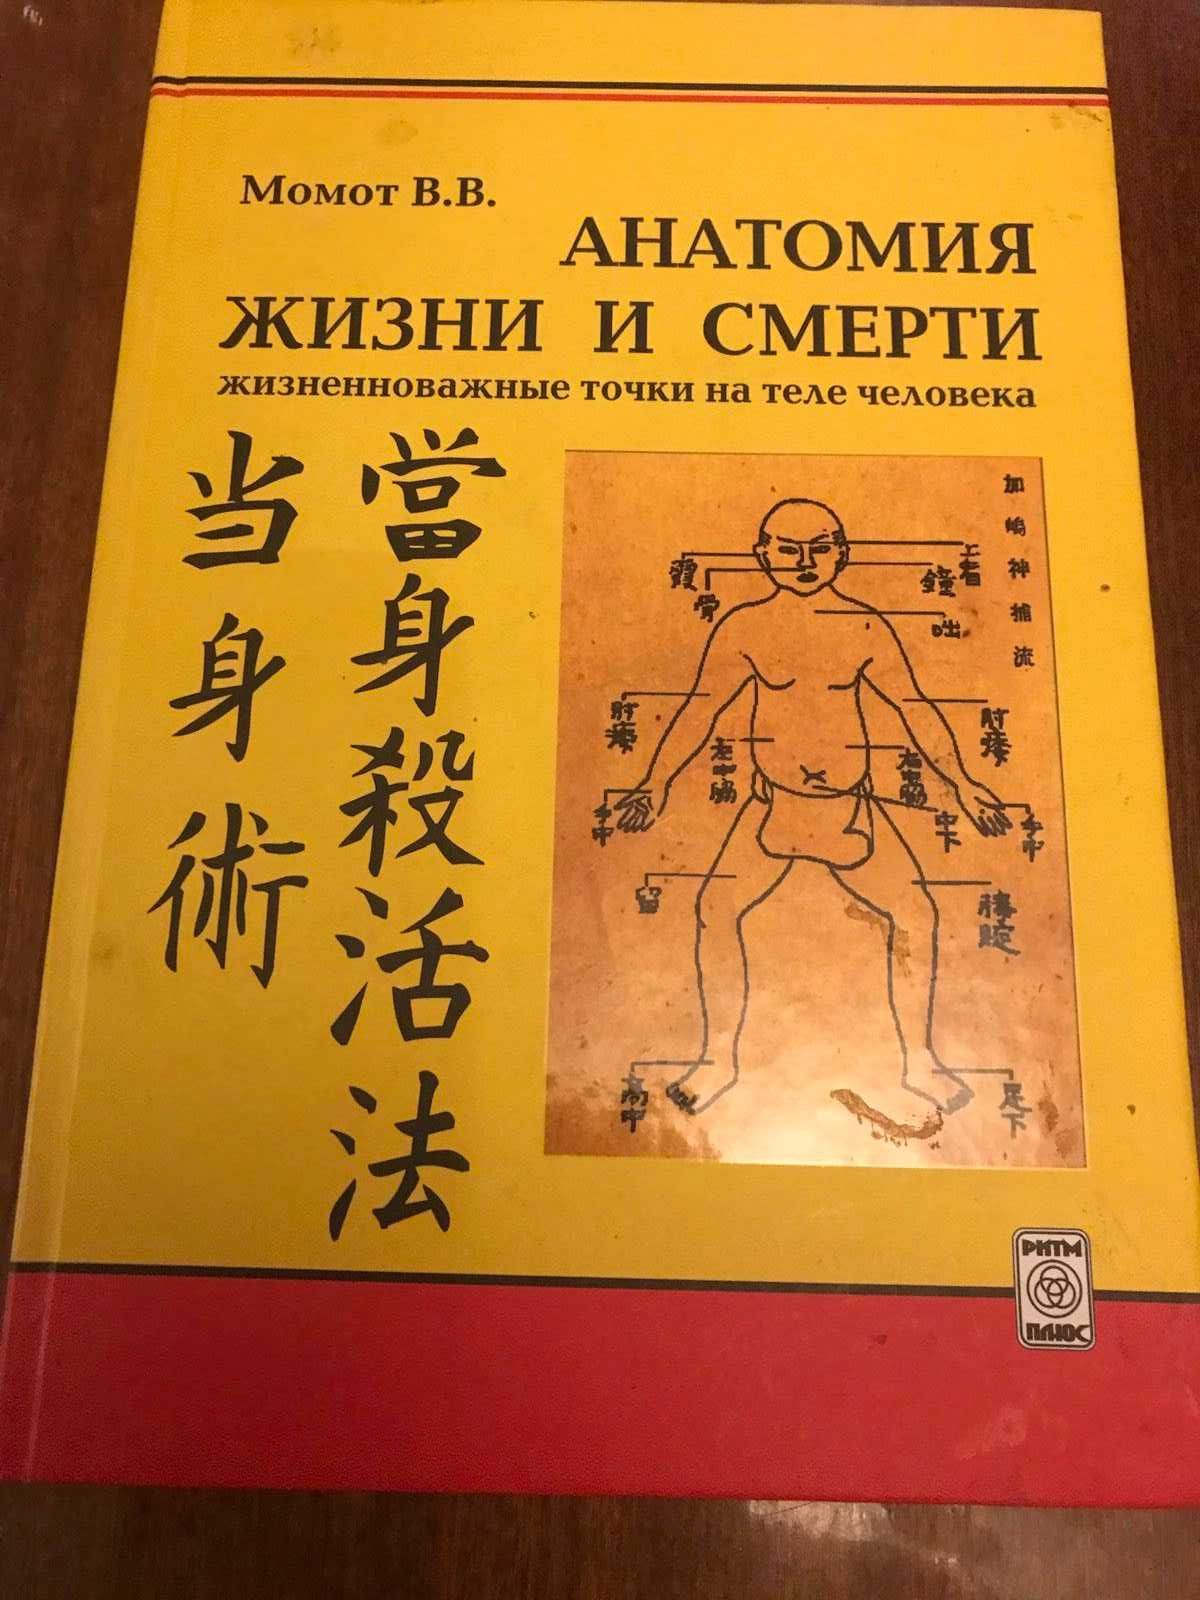 Продам книгу"Анатомия жизни и смерти".